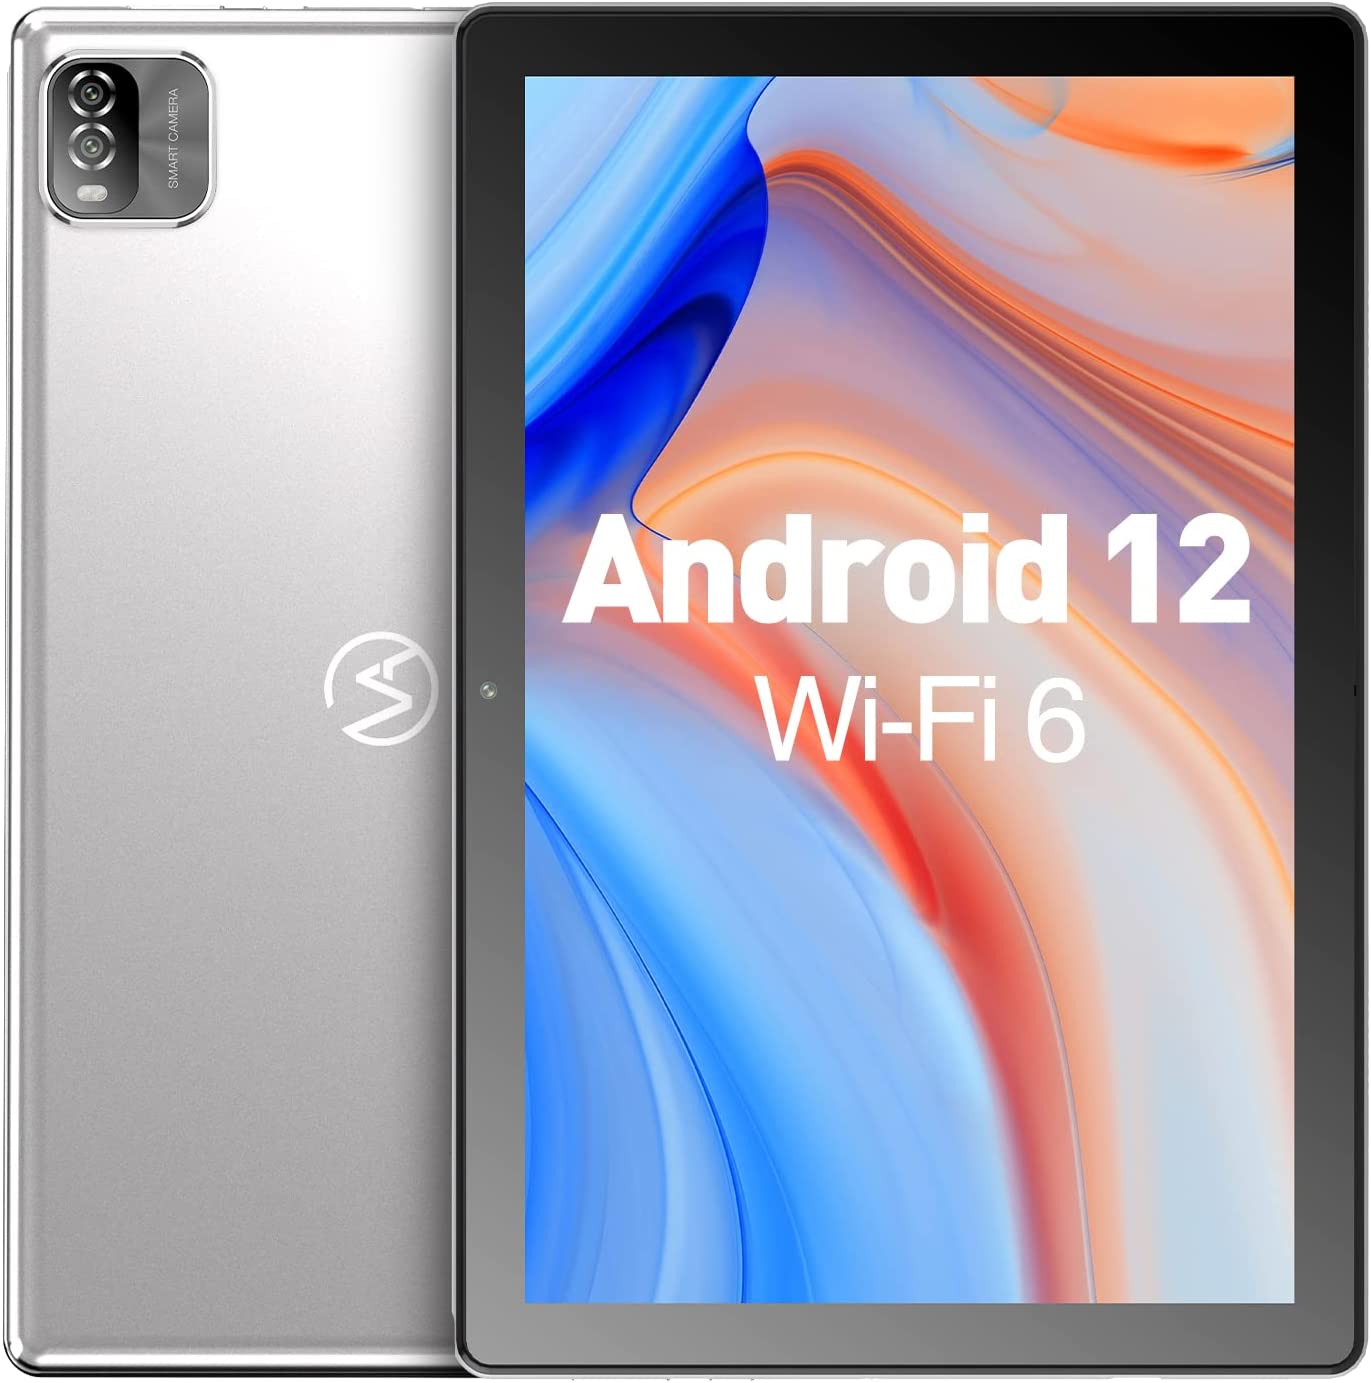 Android12 タブレット10インチ wi-fiモデル タブレット アンドロイドRAM3GB/ROM64GB VASOUN M10 タブレット 4コア CPU 1.6Ghz 1TB TF拡張可能 1280 800解像度HD IPSディスプレイ GMS認証 2.4G/WiFi 6 6000mAh Type-C充電 Bluetooth